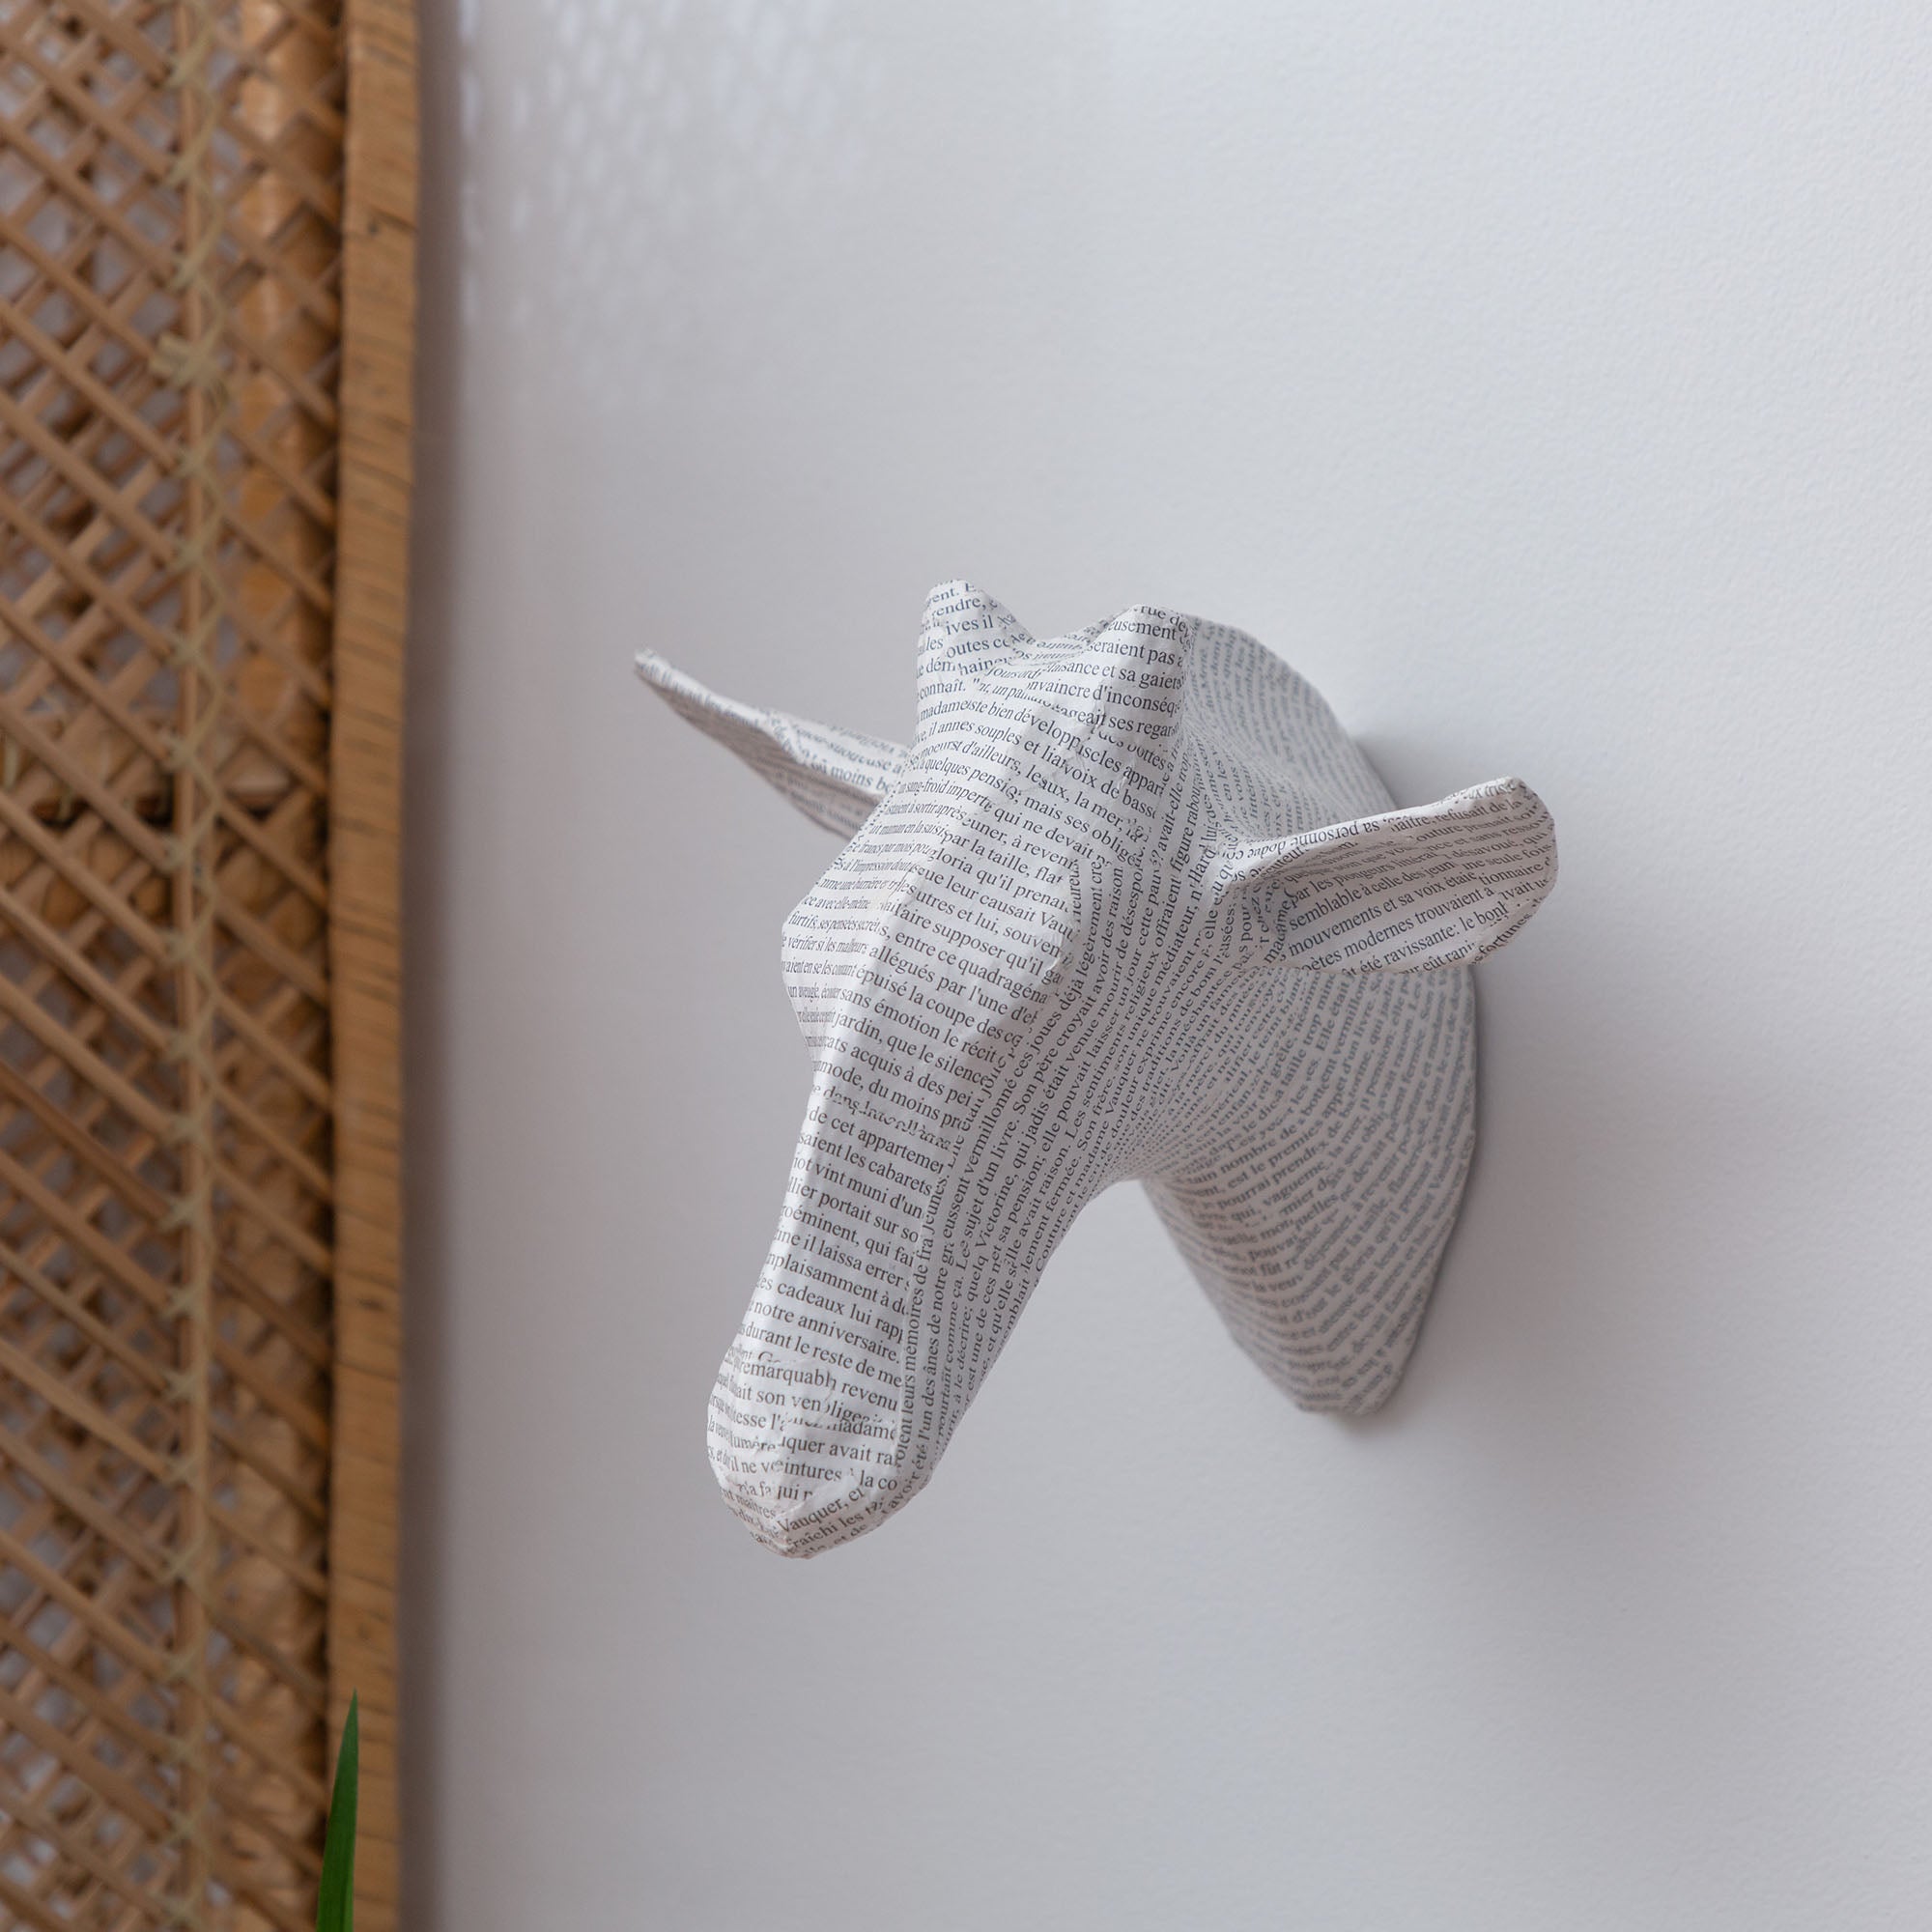 Animal Paper Mache Wall Hanging - Giraffe